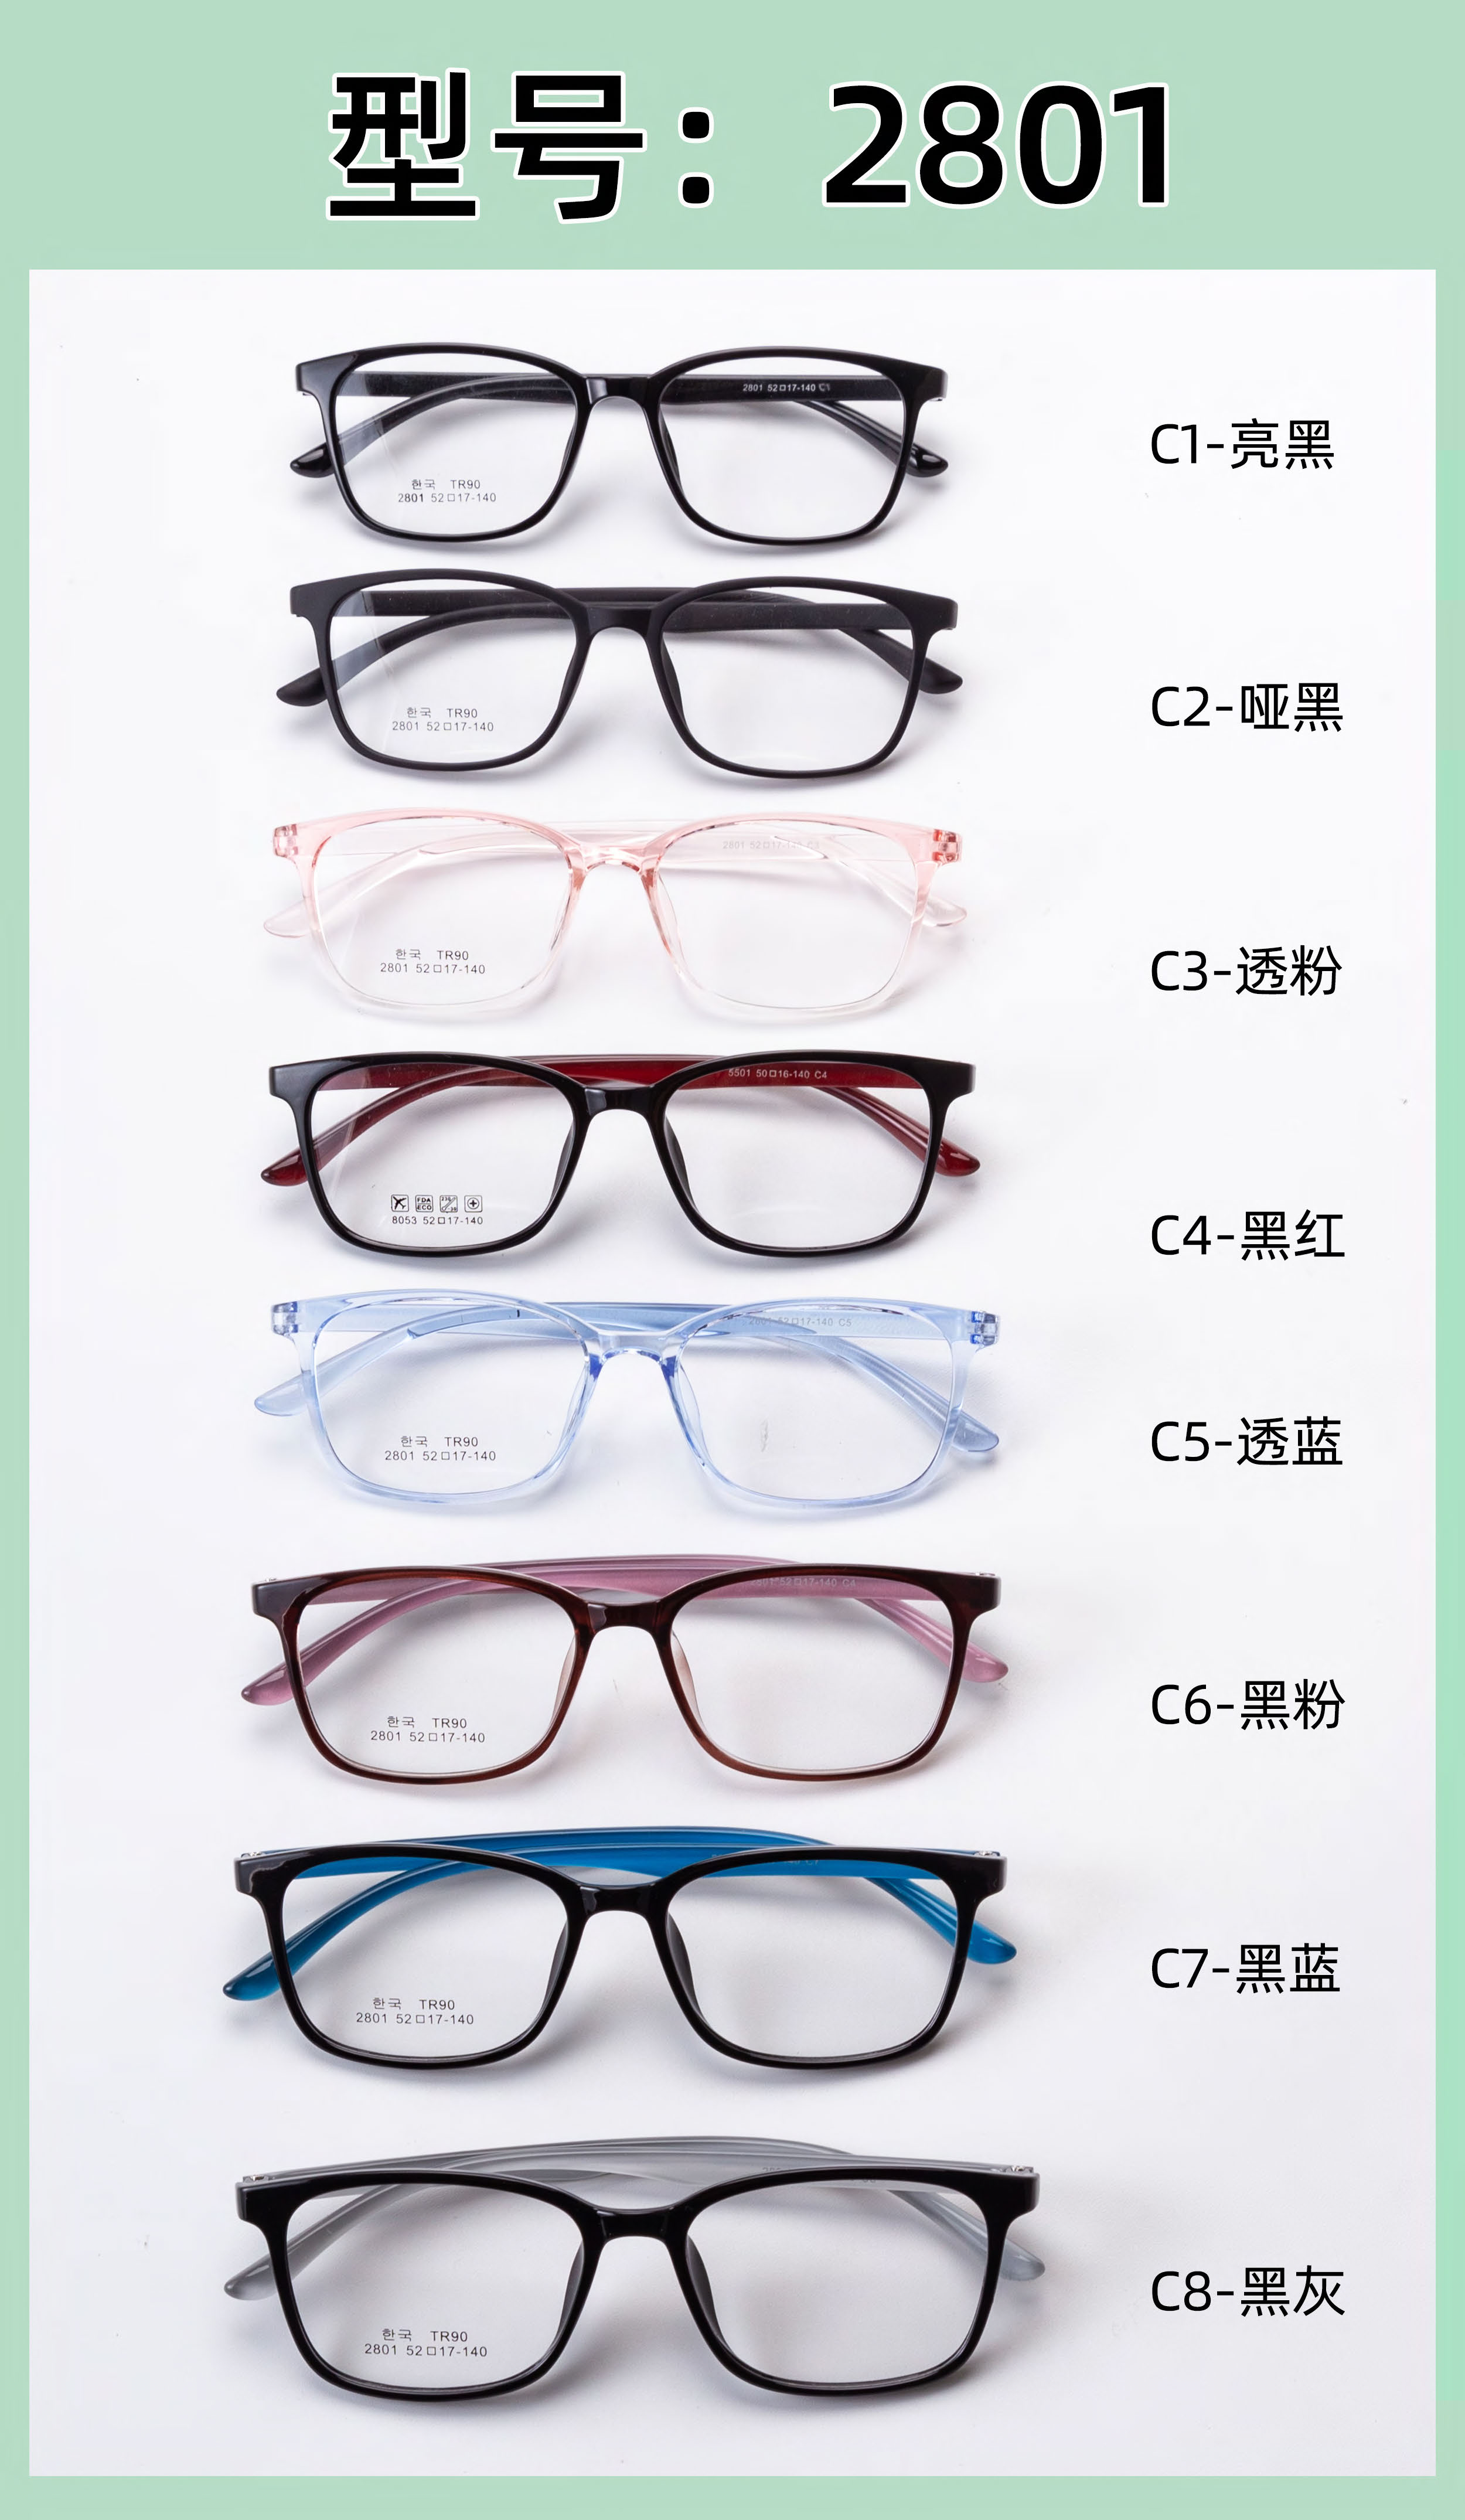 goedkoopste TR-bril